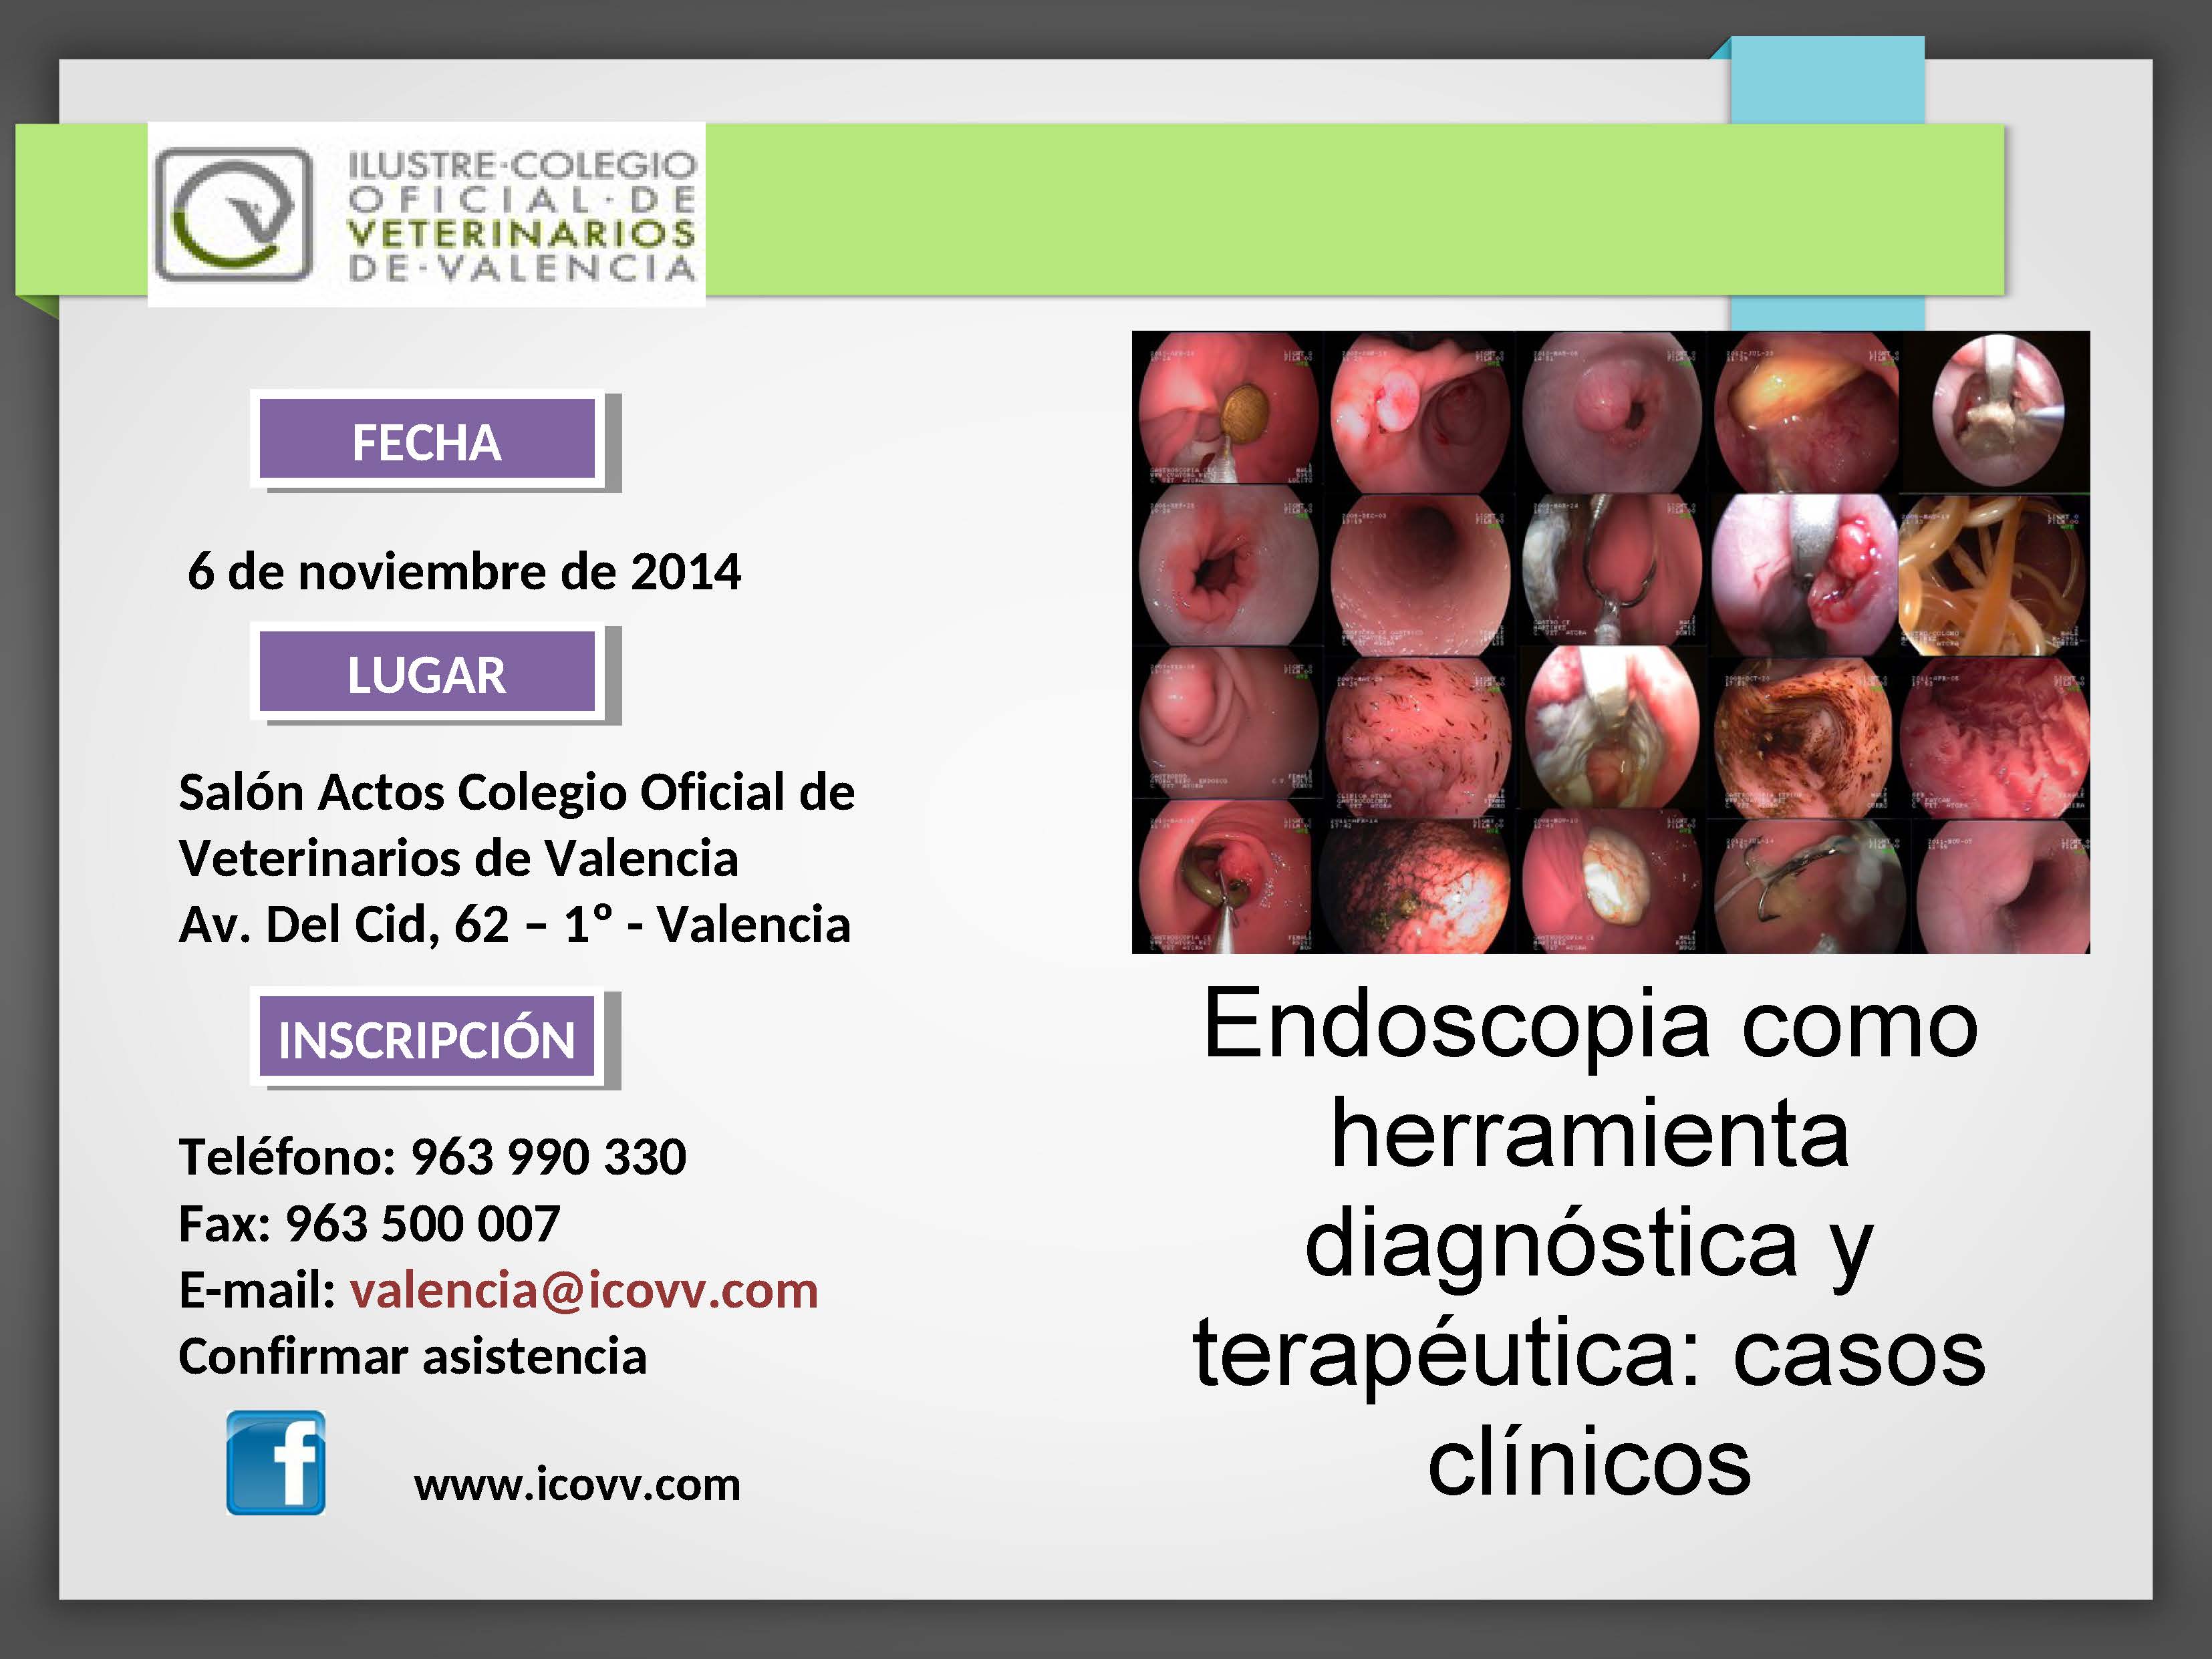 El 6 de noviembre se realizará en el Salón de Actos del Colegio Oficial de Veterinarios de Valencia una charla sobre la endoscopia